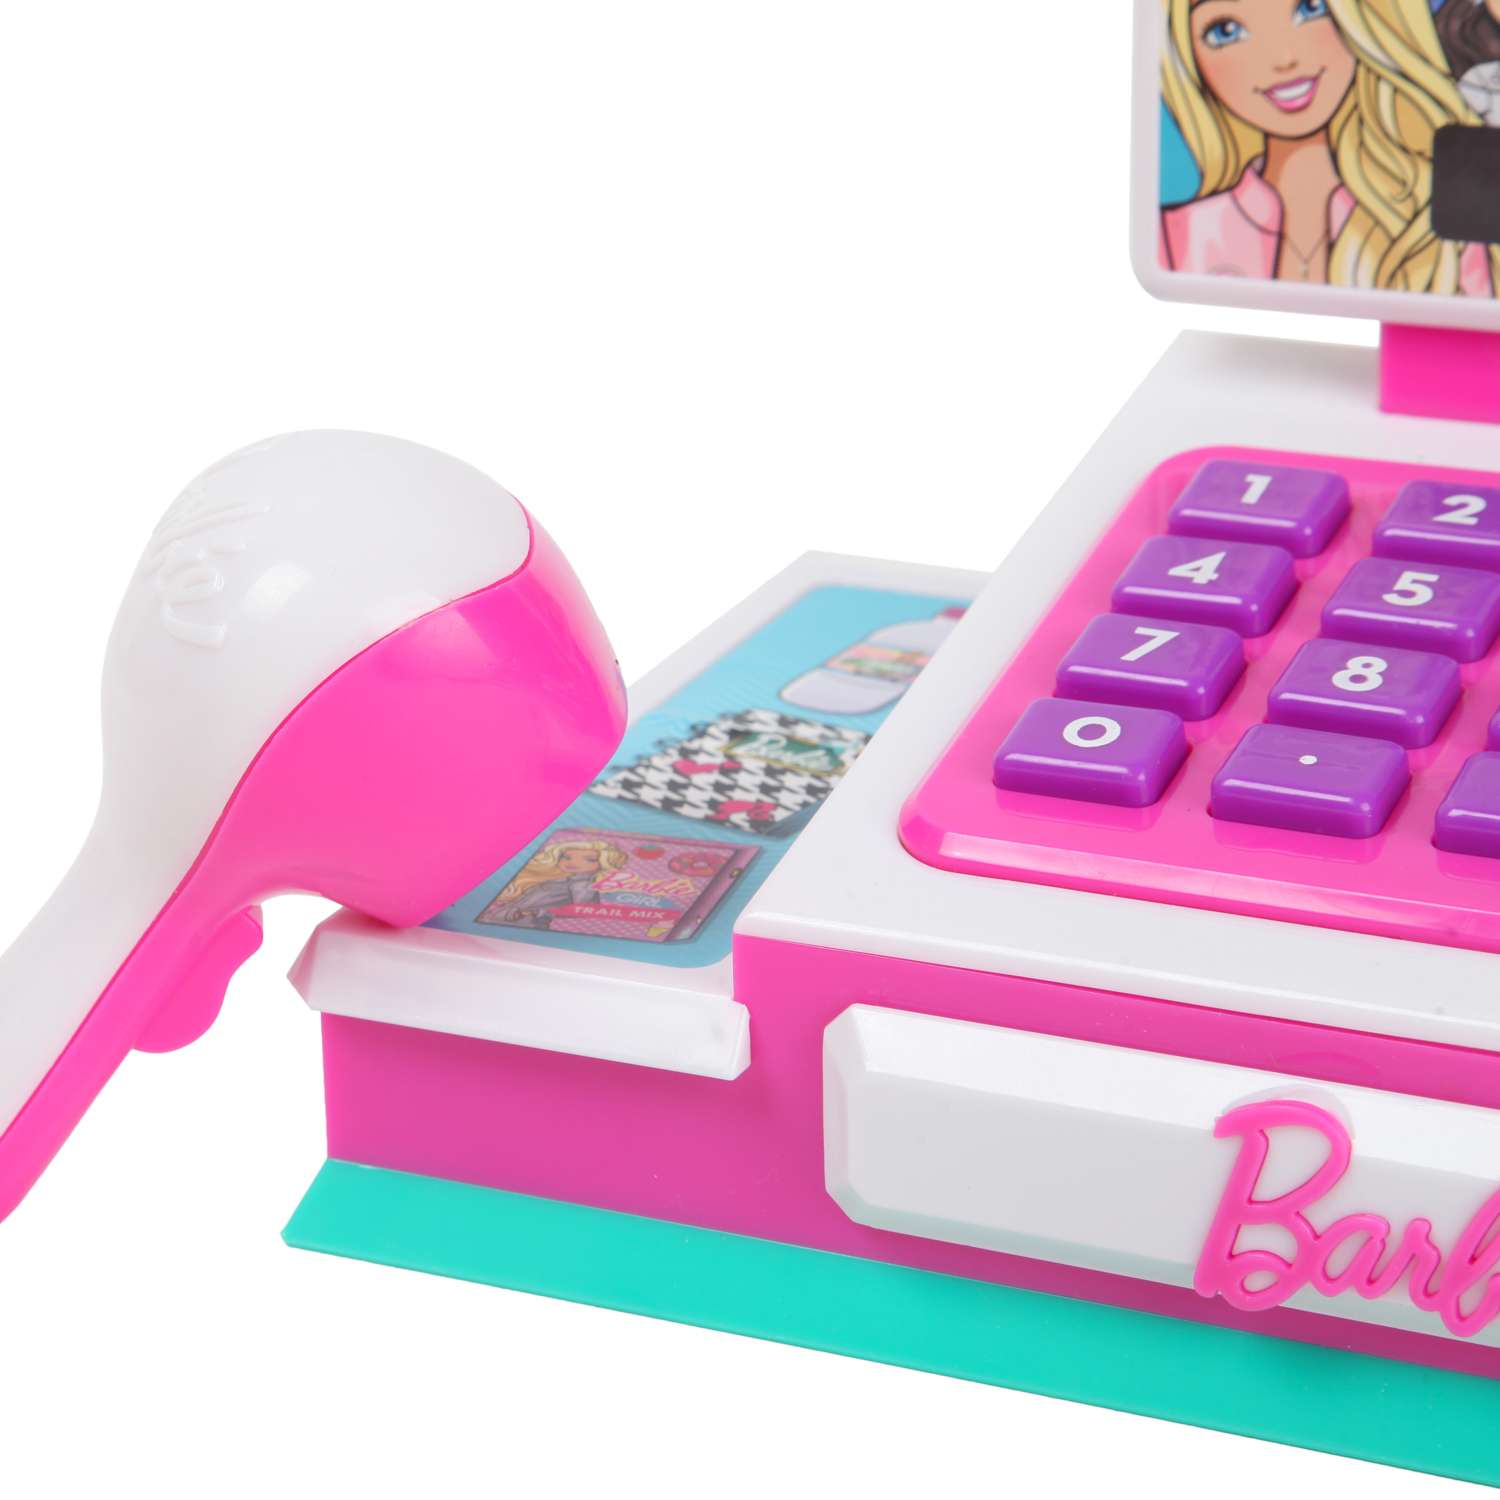 Игрушка Barbie Кассовый аппарат с белым сканером малый 62980 - фото 4